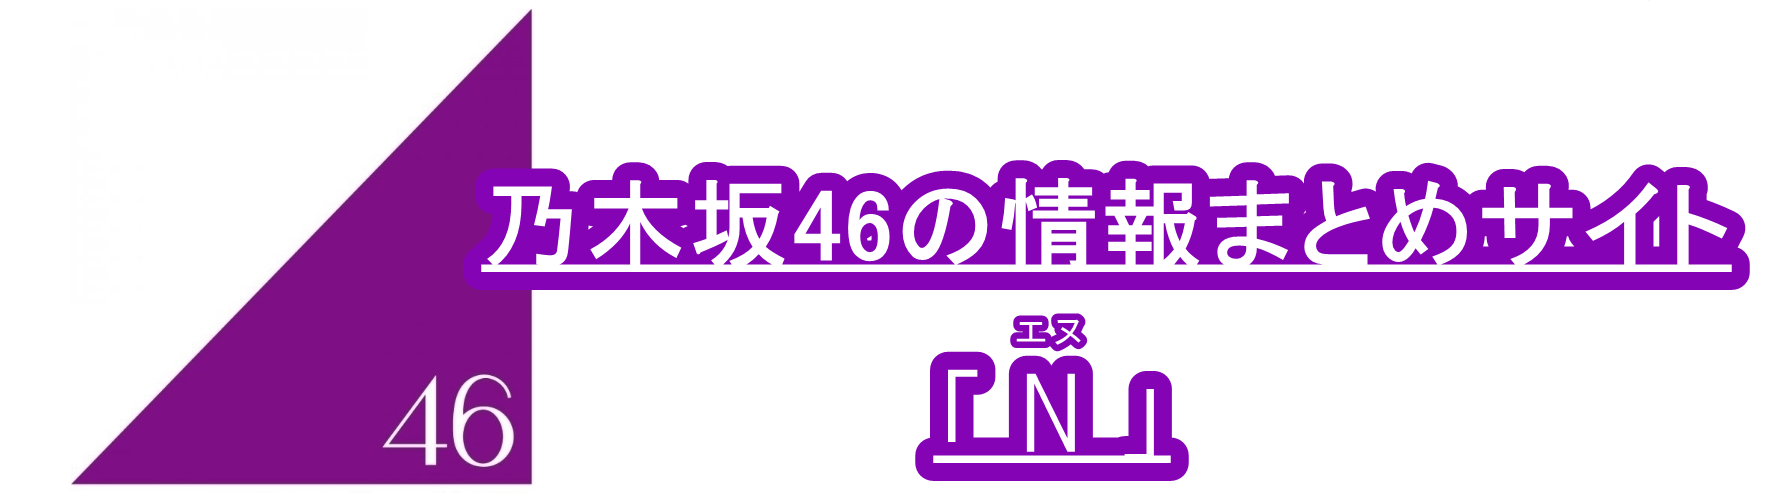 乃木坂46の情報まとめサイト「N」